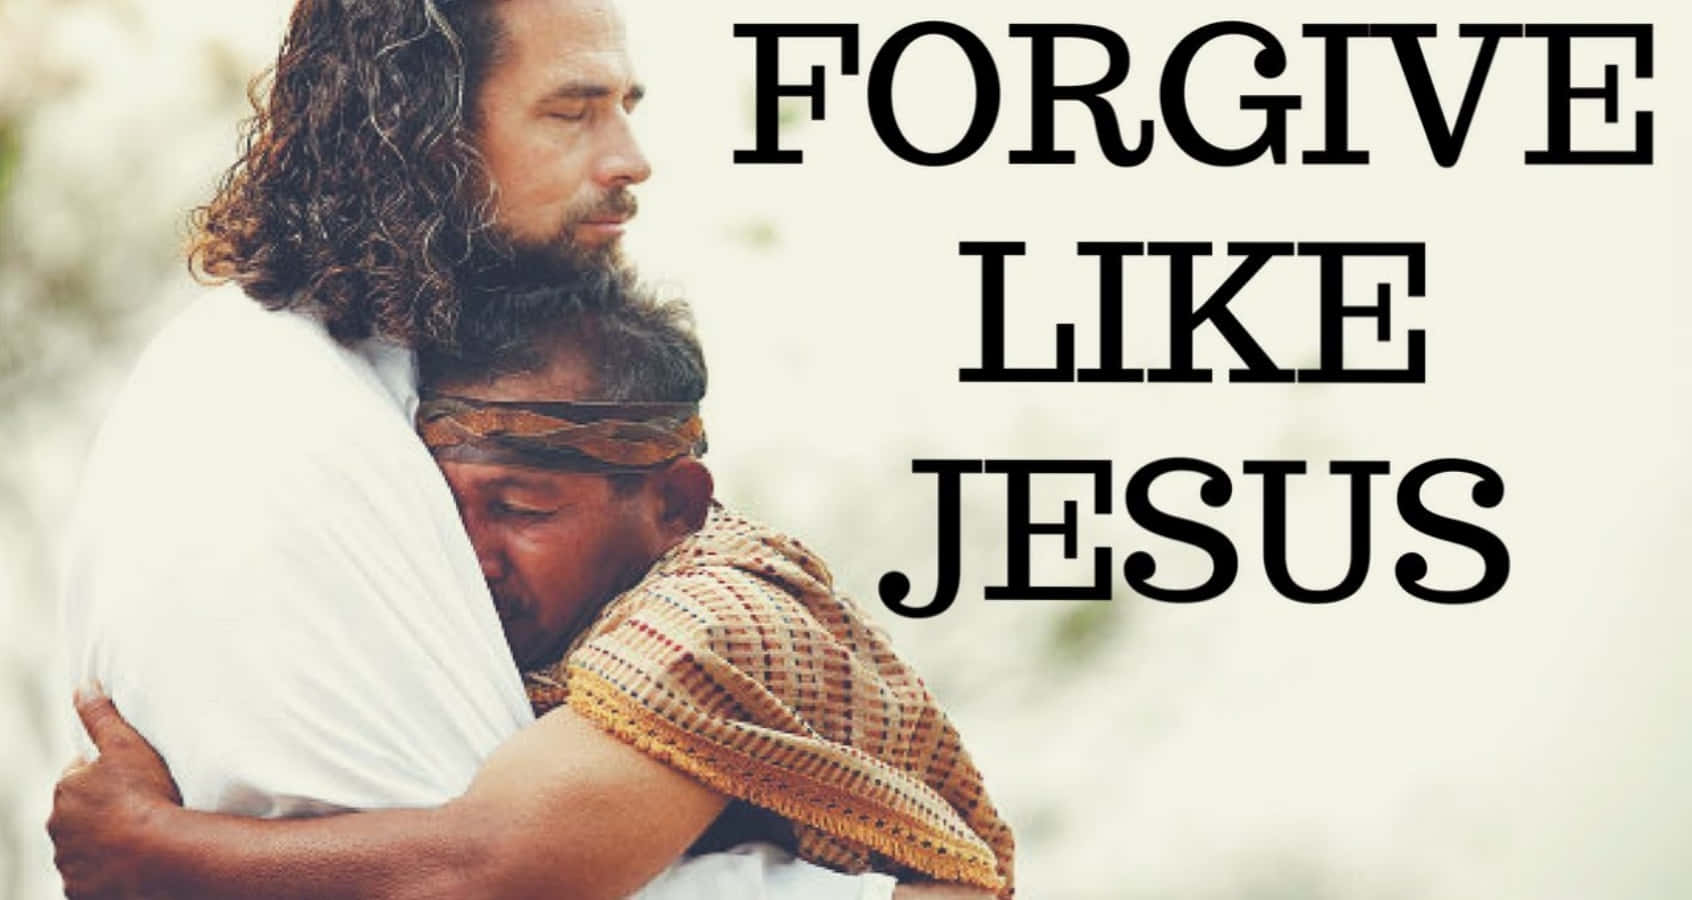 Forgive Like Jesus - A Man Hugging A Man